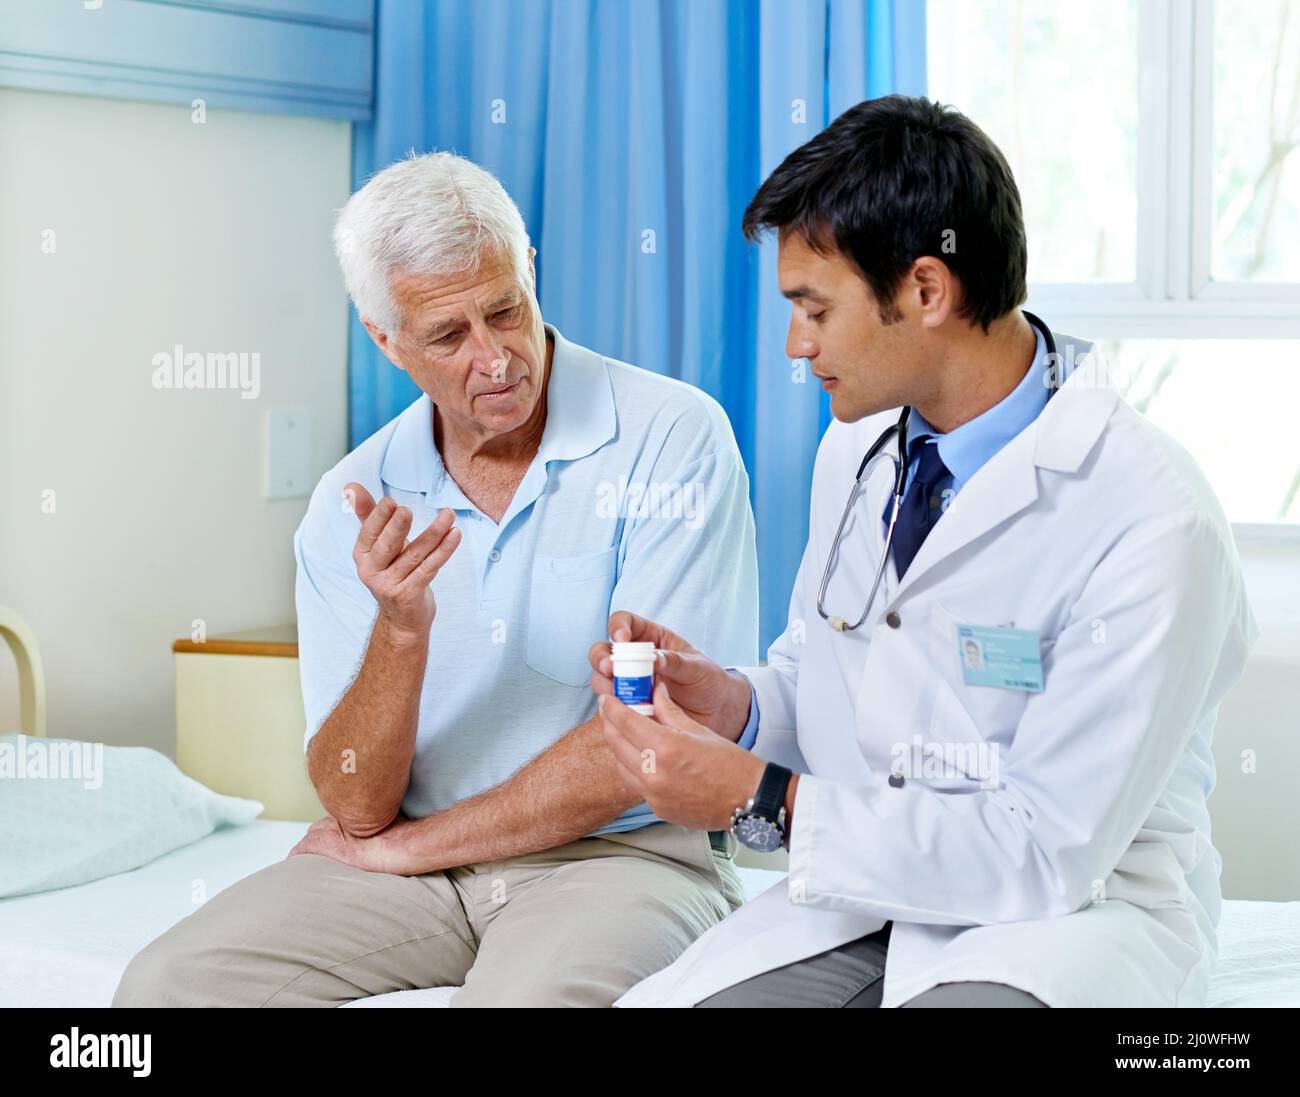 Nehmen Sie sich einfach einen pro Tag. Aufnahme eines hübschen jungen Arztes, der einem älteren Patienten Medikamente erklärt. Stockfoto